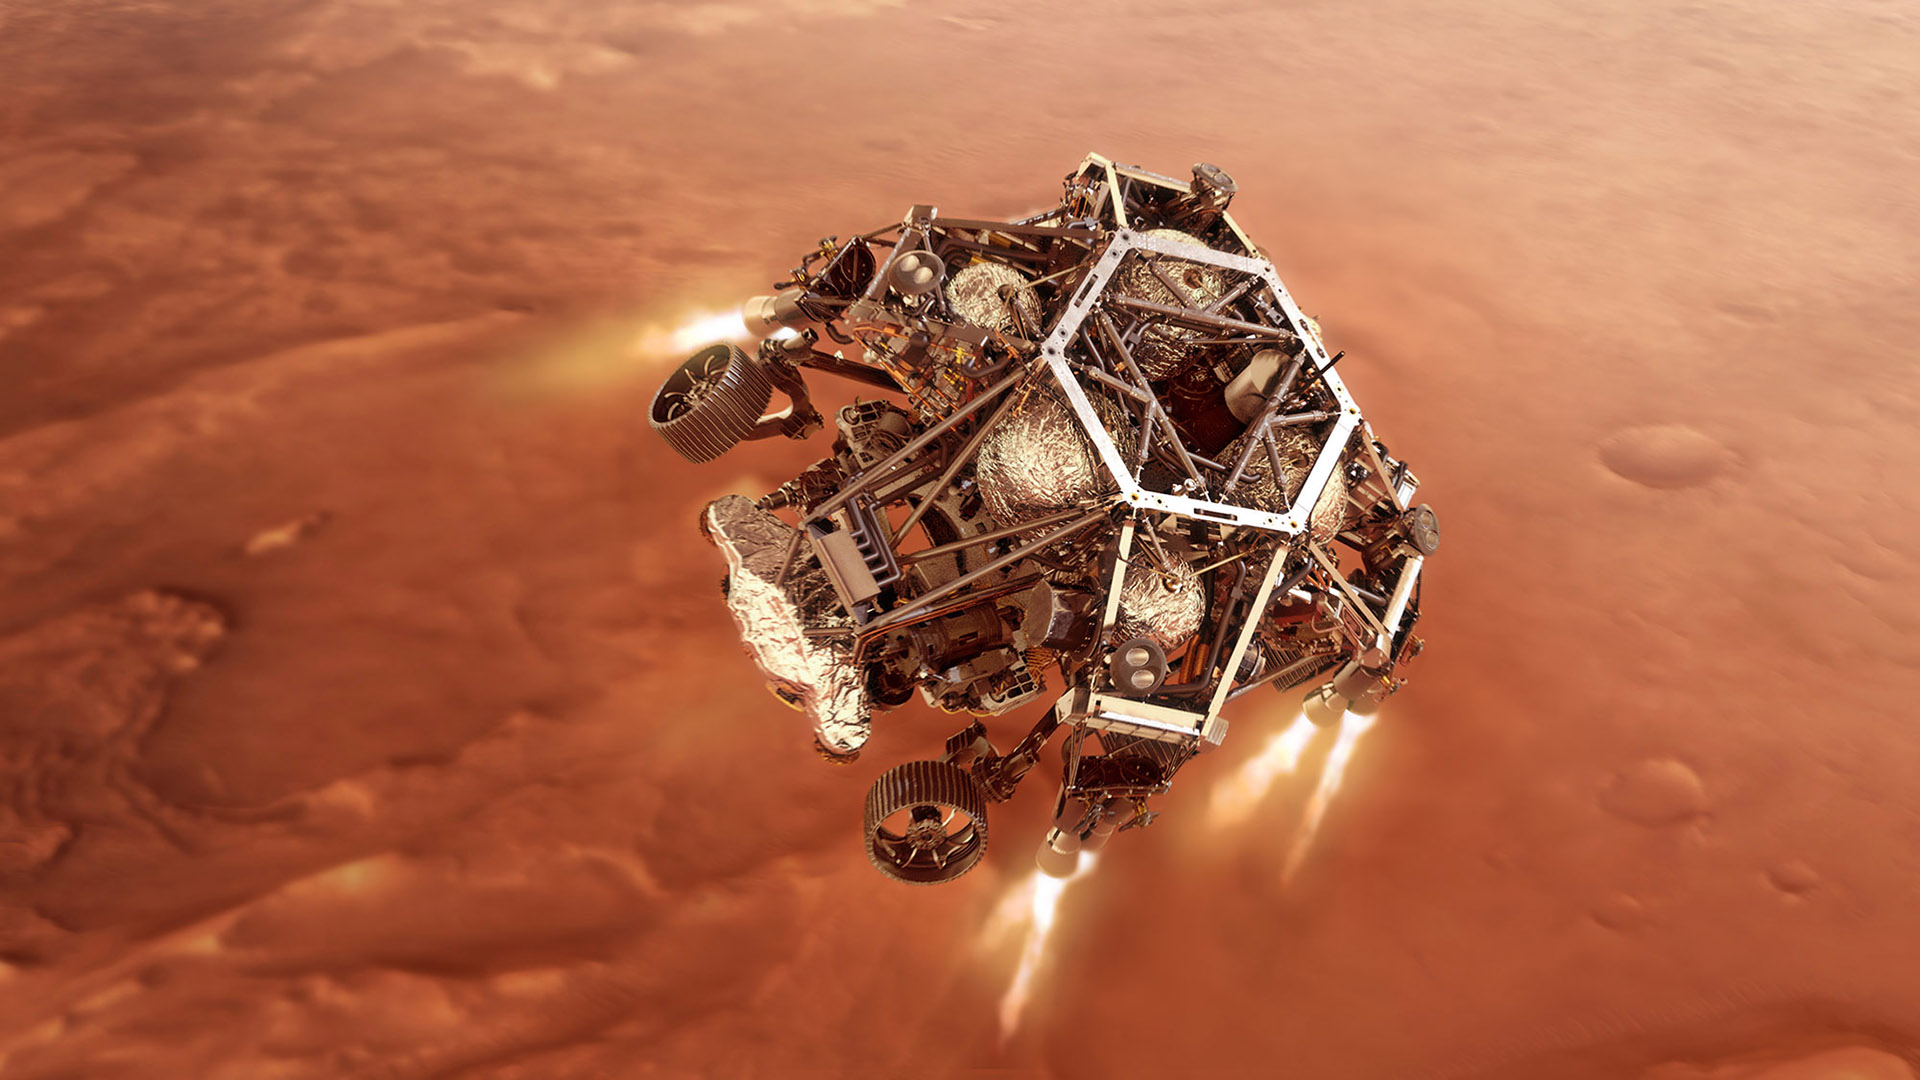 El rover Perseverance es uno de los vehículos de la NASA que actualmente están en misión exploratoria de Marte.  (Photo illustration by NASA via Getty Images)